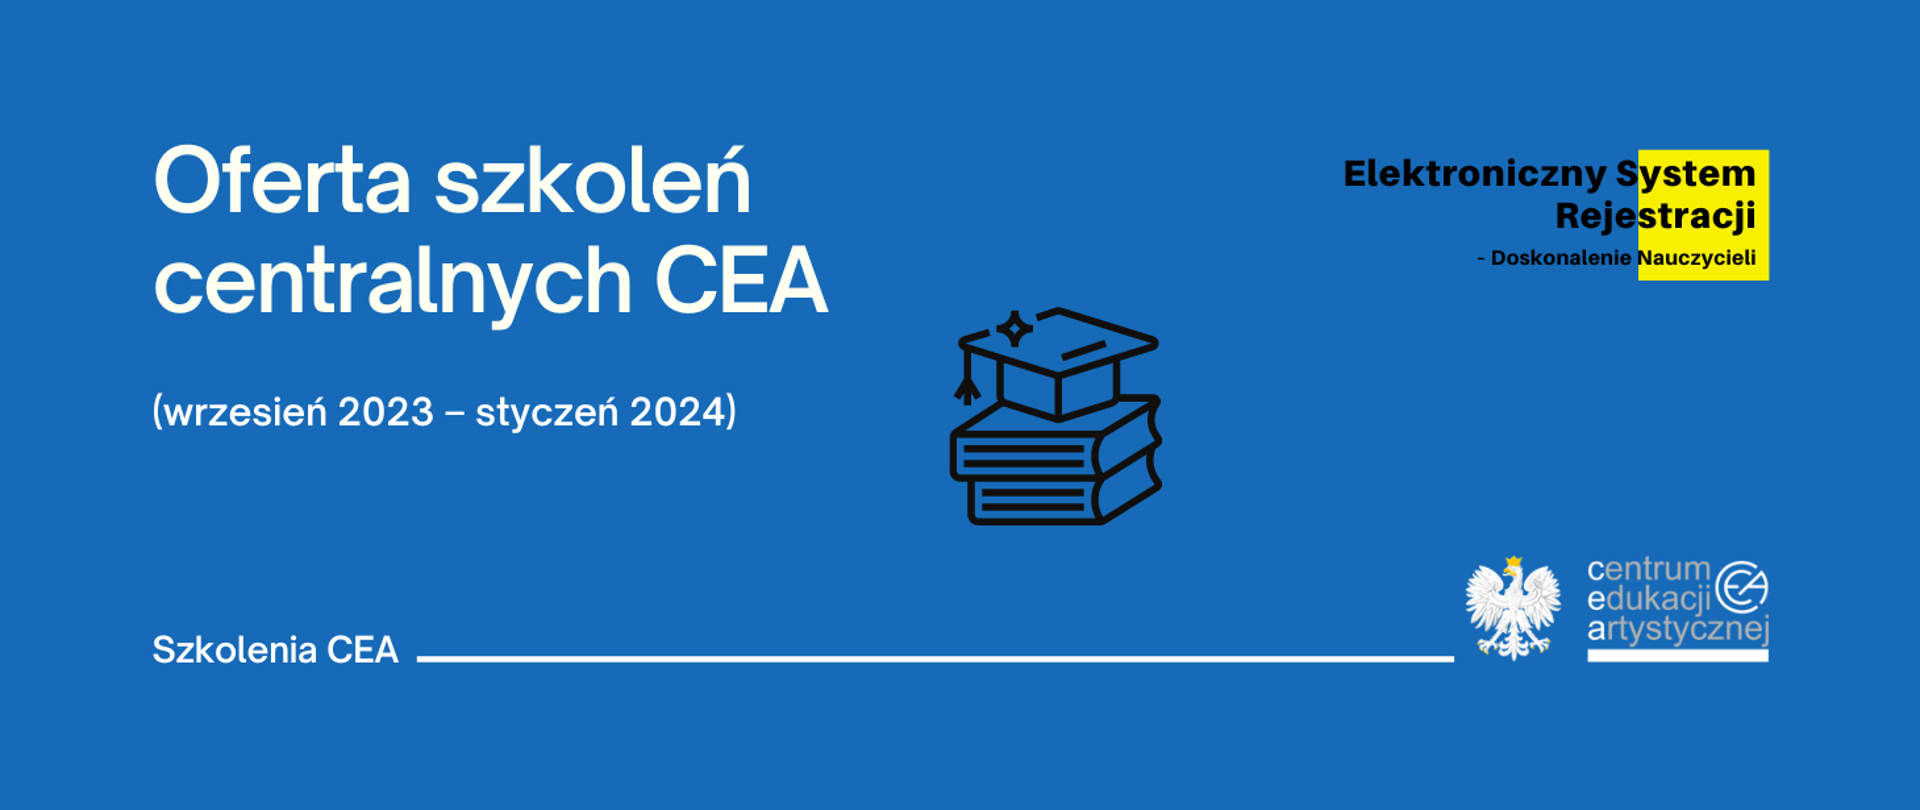 Niebieska grafika z logo CEA w prawym dolnym rogu, logo elektronicznego systemu rejestracji nauczycieli w prawym górnym rogu i tekstem "Oferta szkoleń centralnych CEA (wrzesień 2023 – styczeń 2024)"